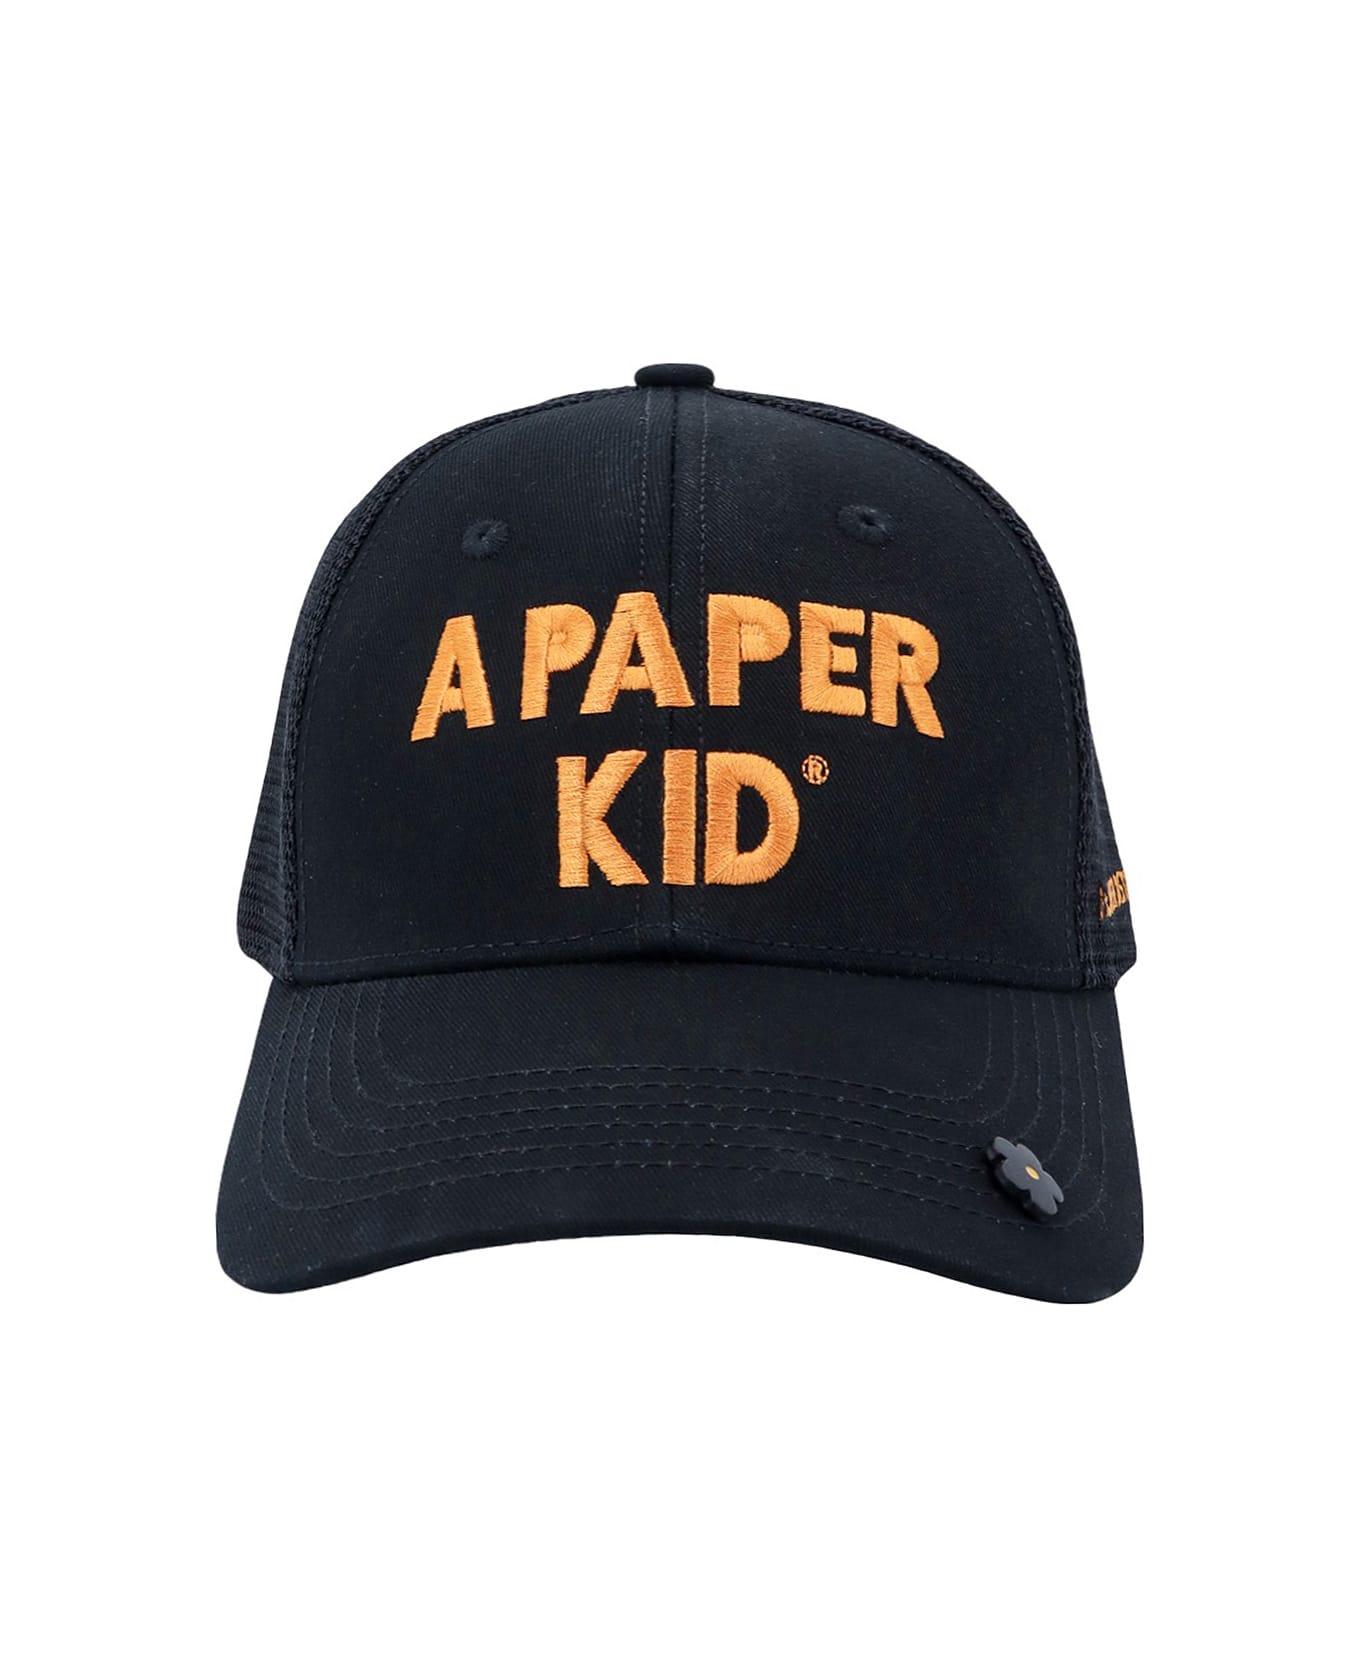 A Paper Kid Hat - Black 帽子